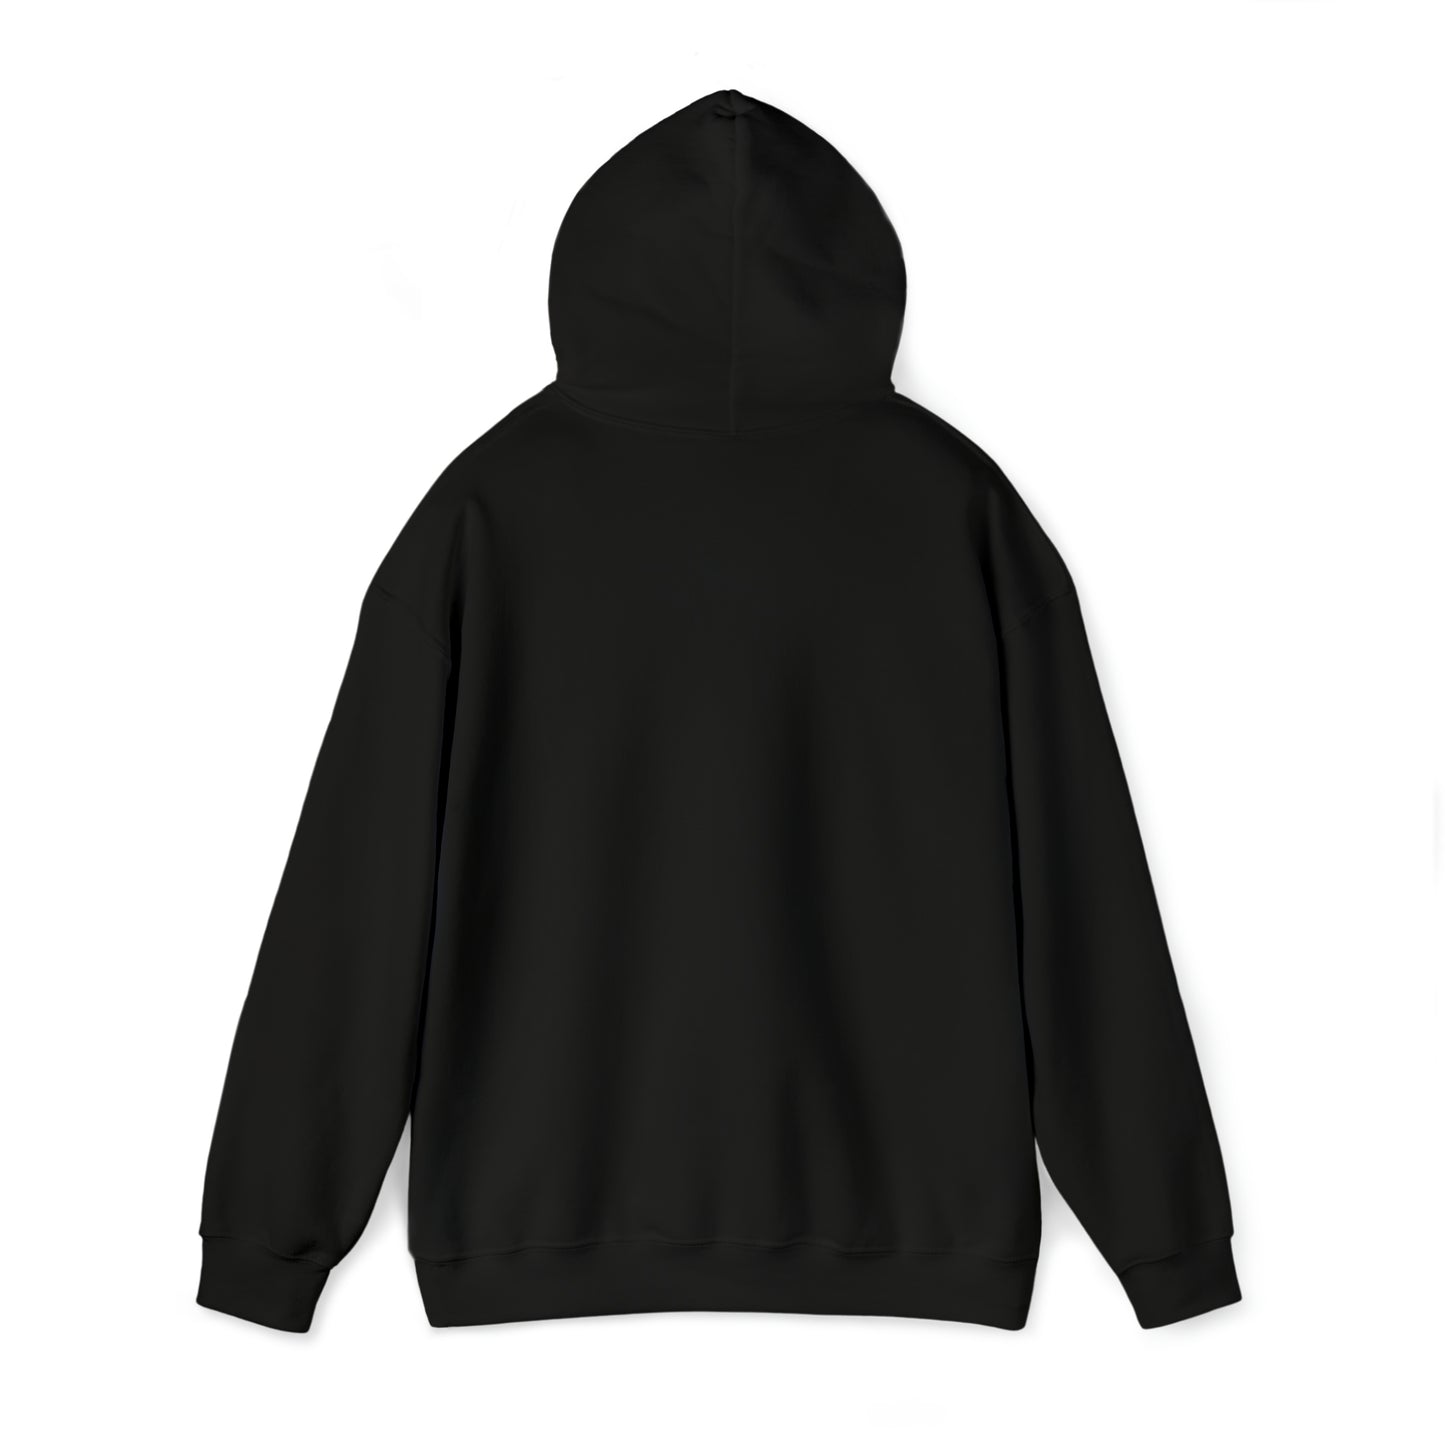 Eat, Sleep, Read, Repeat. Adult Unisex Heavy Blend™ Hooded Sweatshirt